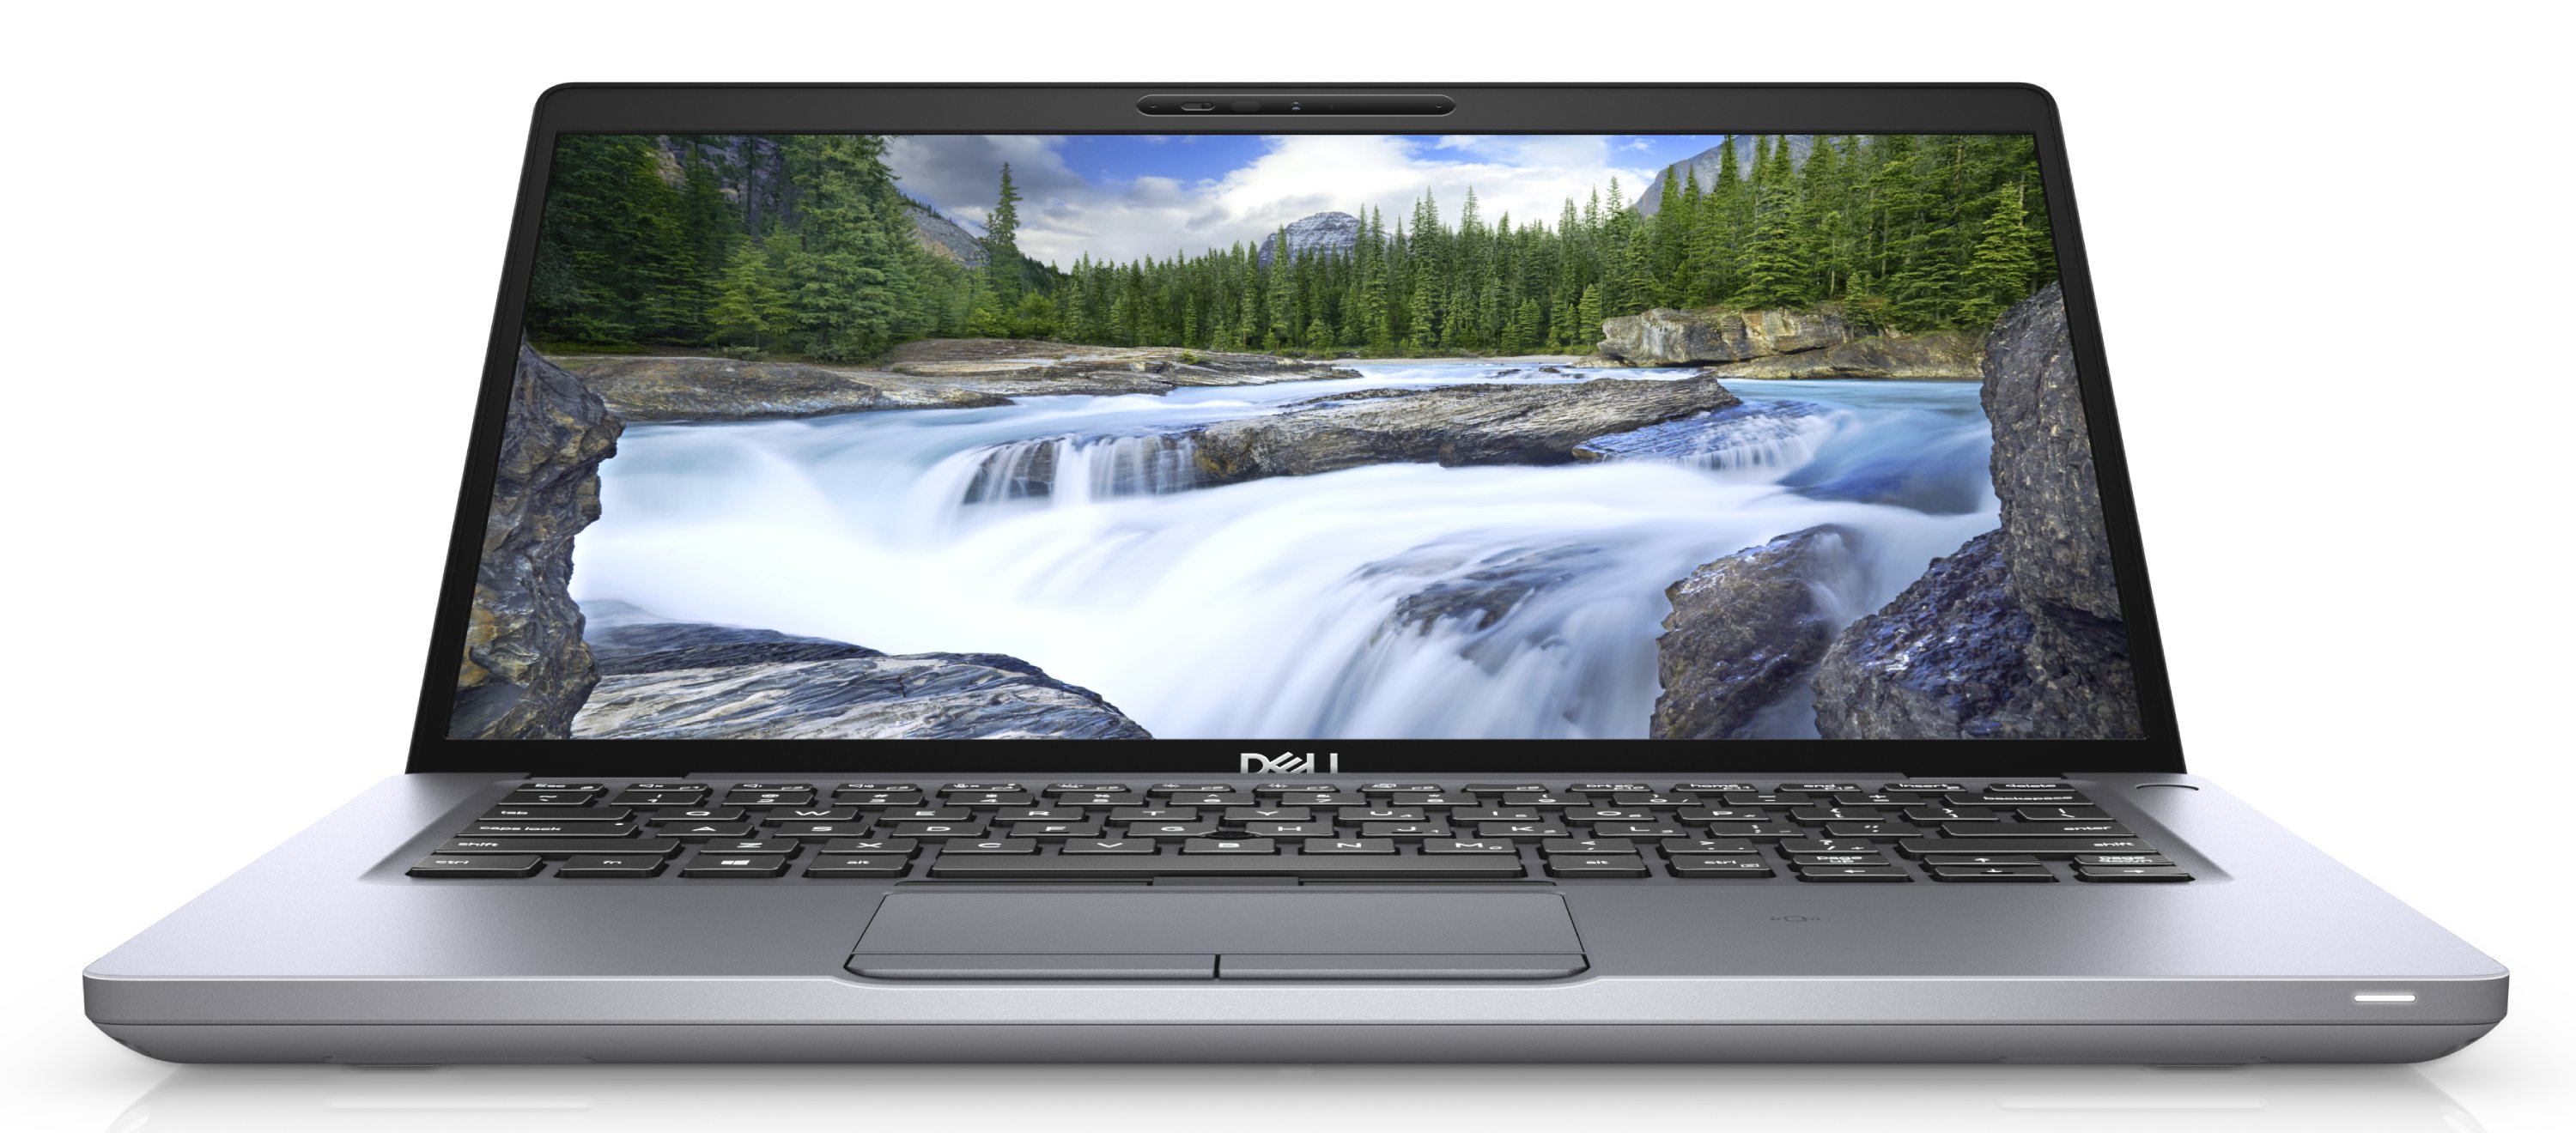 Ноутбук Dell Latitude 5410 Core i5-10310U (1,7GHz)14,0" FullHD WVA Antiglare 300 nits 8GB (1x8GB) DDR4 256GB SSD Intel UHD 620,FPR, TPM,Thunderbolt 3,4 cell (68Whr) W10 Pro 3y NBD,Gray-39136